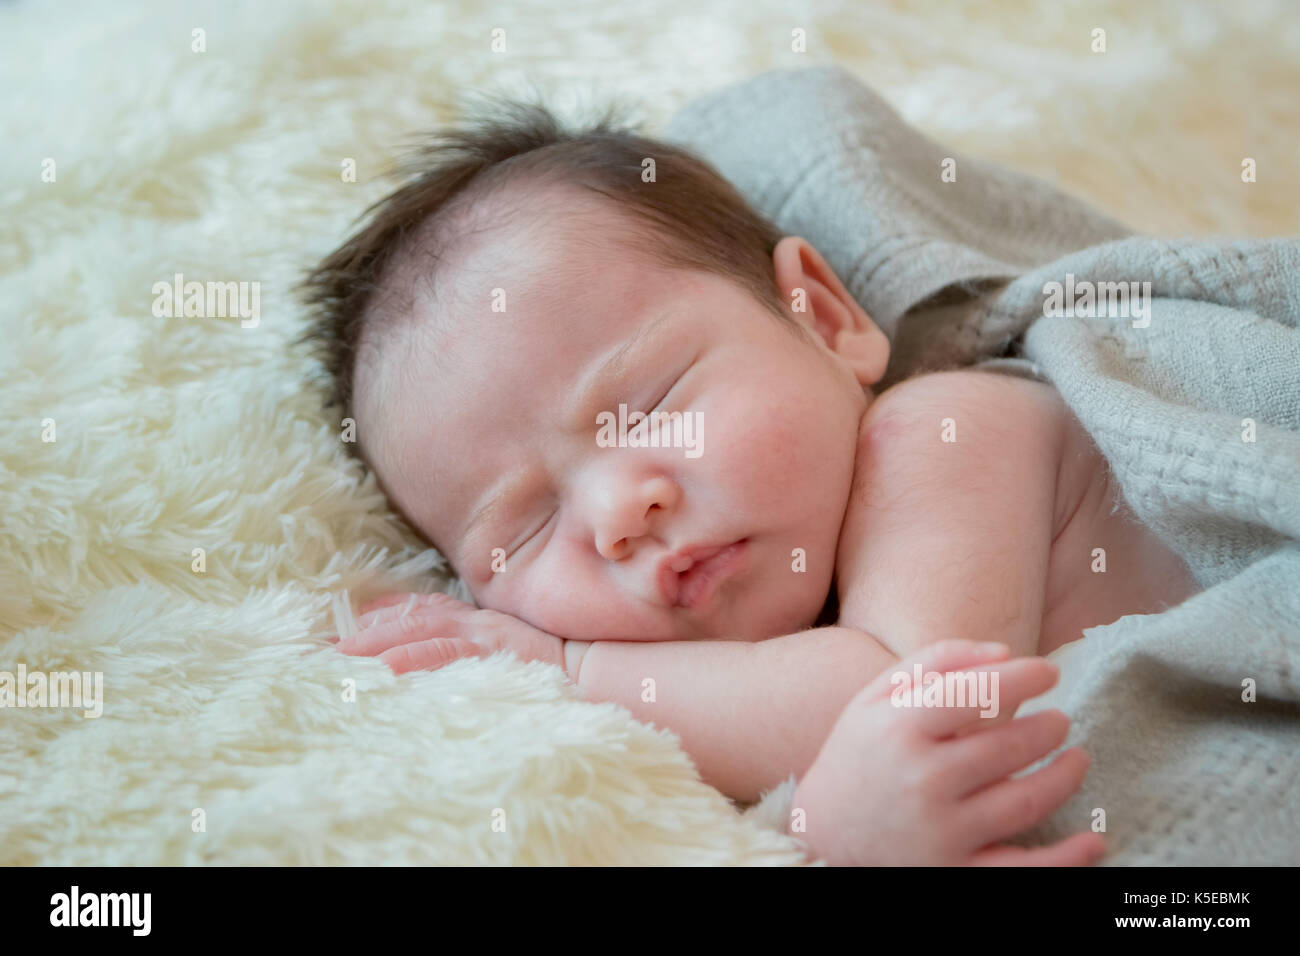 Carino il nuovo nato dormendo Foto Stock